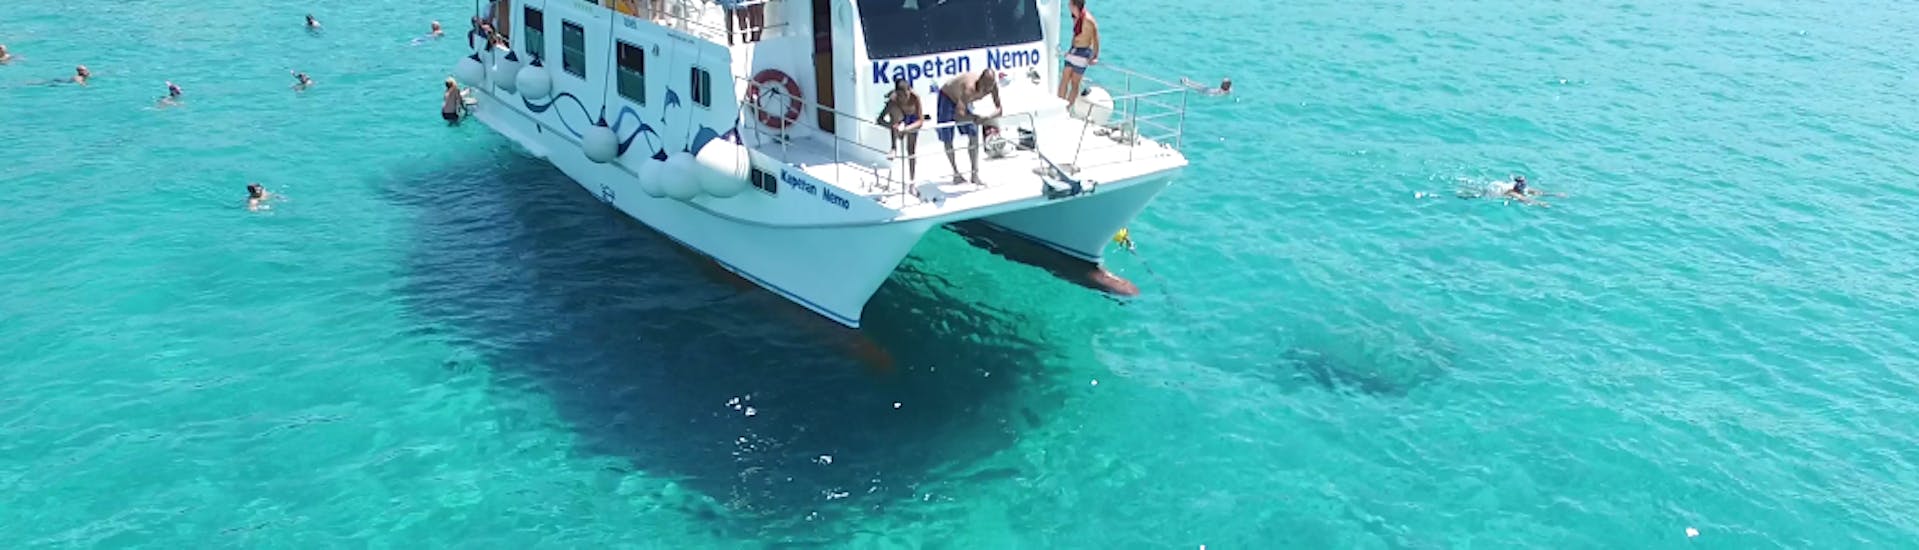 Catamarán deslizándose por el agua durante la excursión en catamarán a Rab, Grgur y la playa de Golden Bay con snorkel con Kapetan Nemo y Mali Pin Krk.